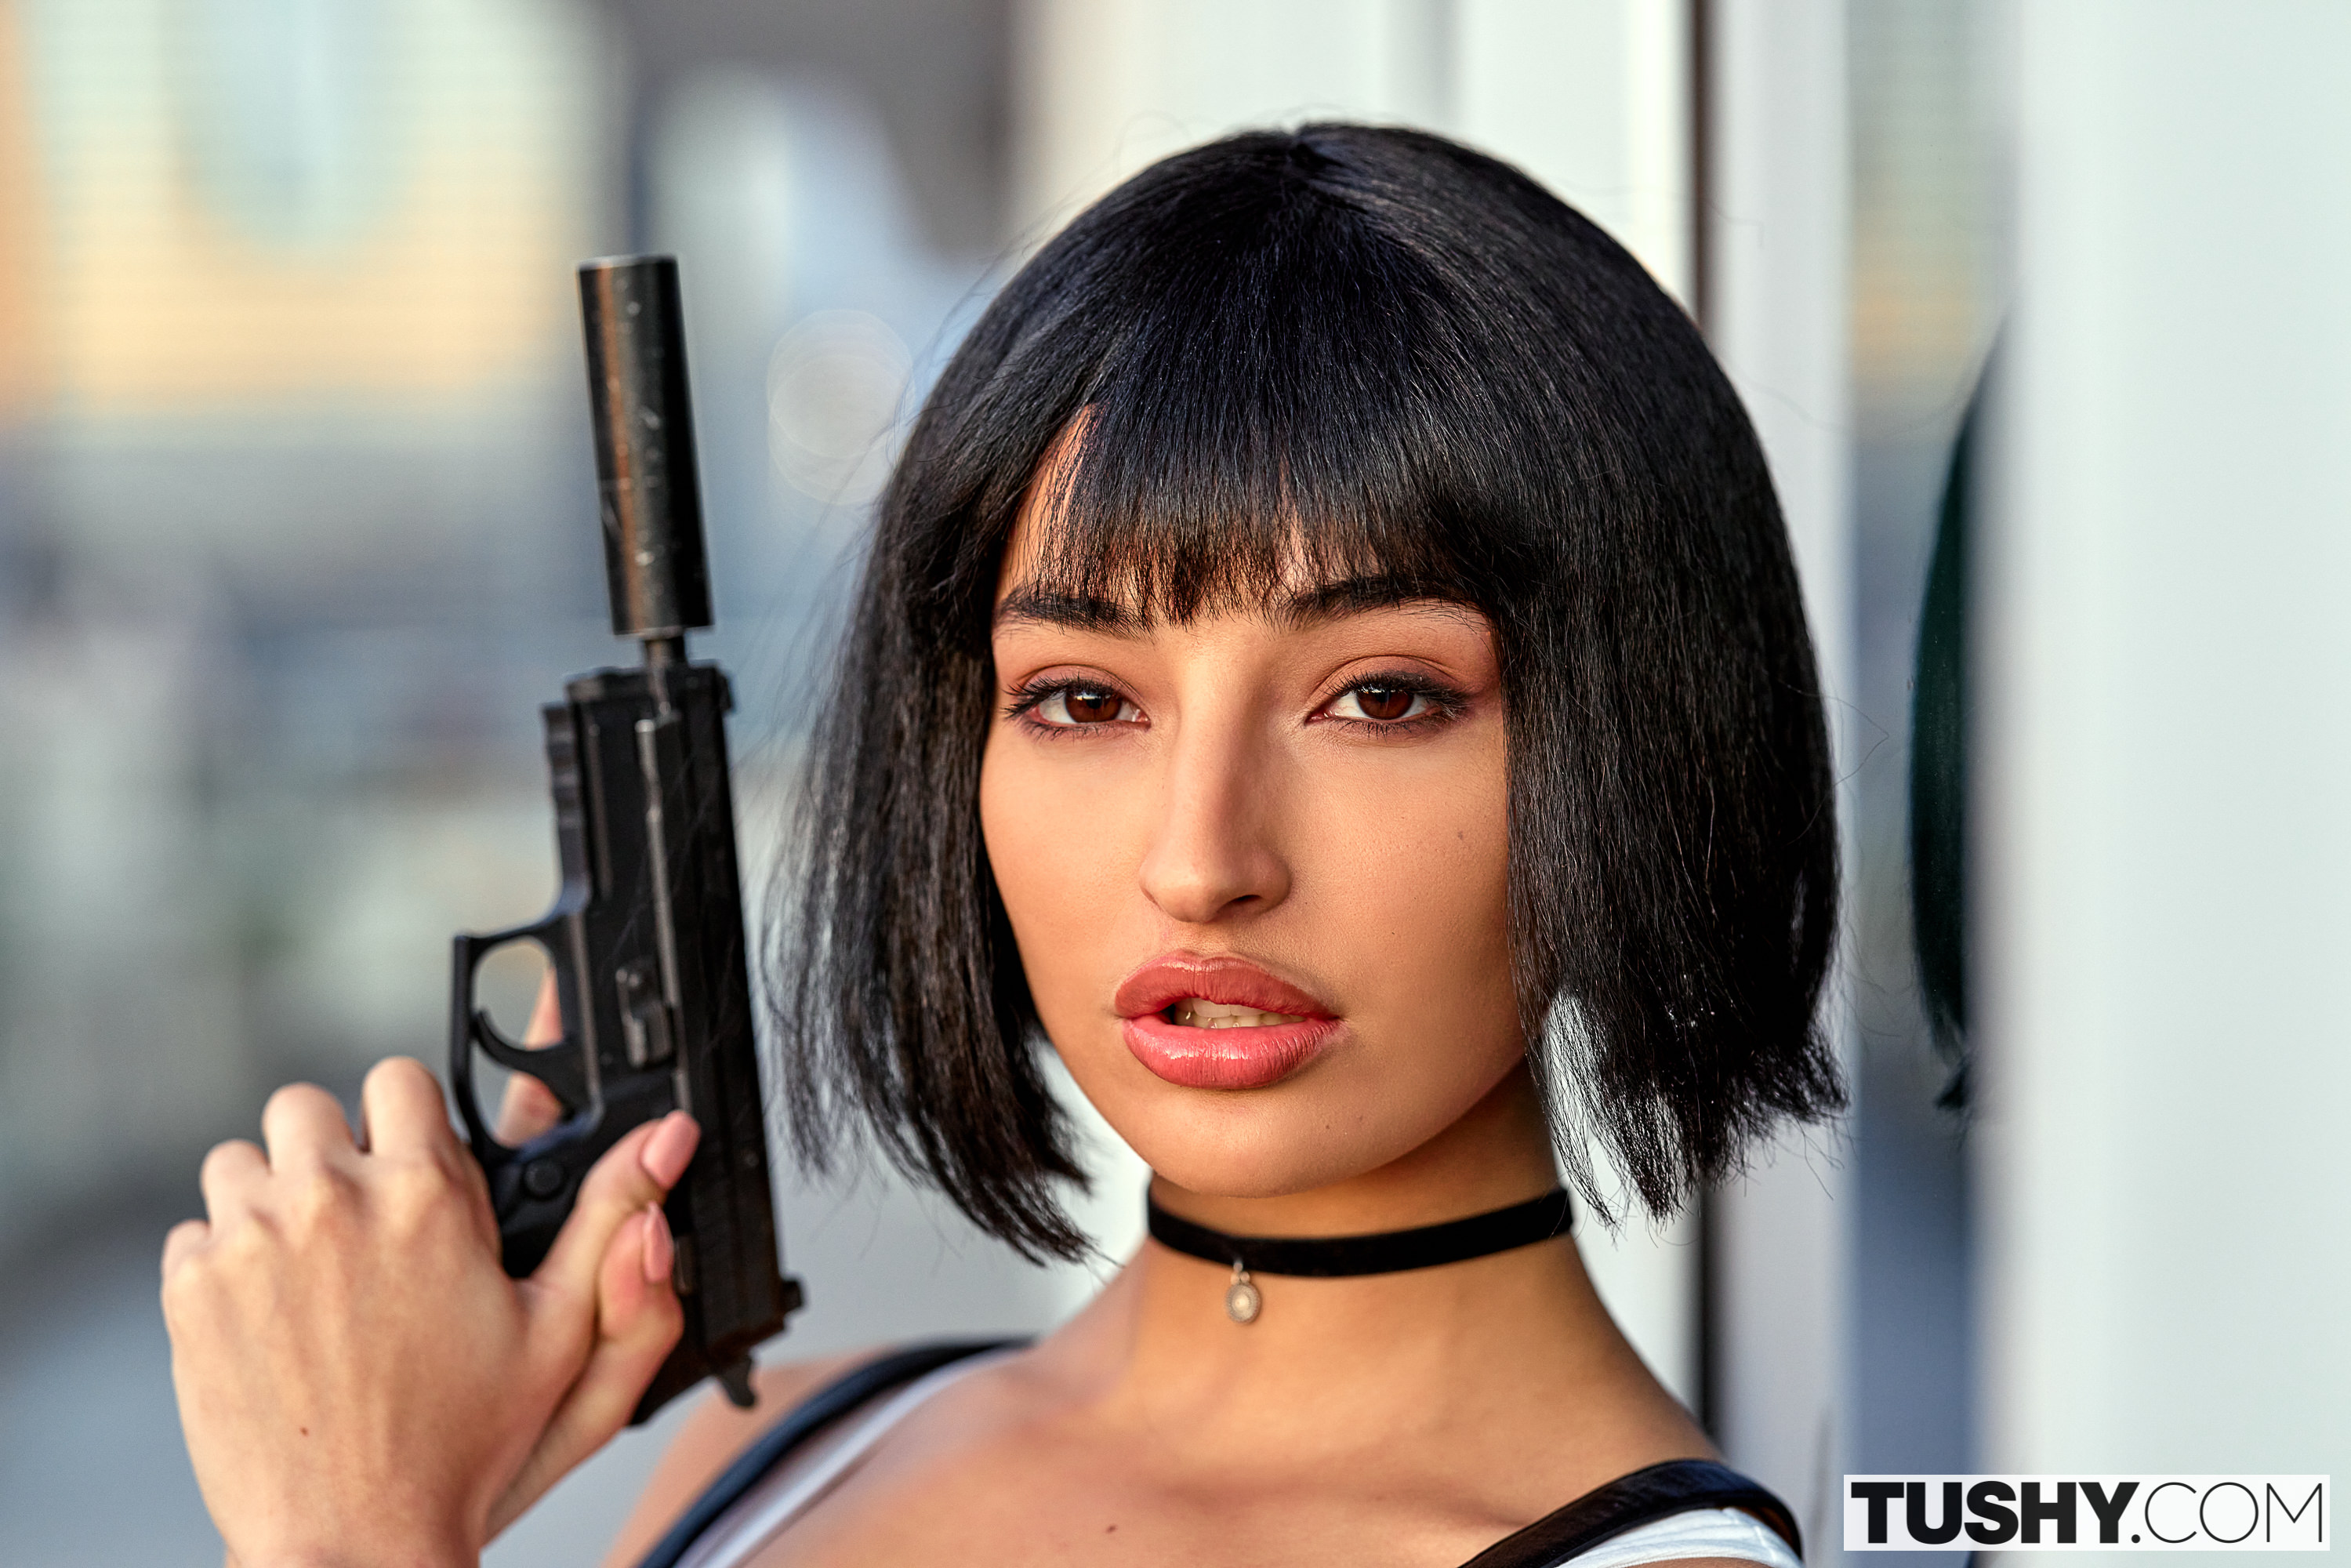 People 2999x2000 Emily Willis Tushy black hair choker pistol pornstar Mathilda women face Latinas American women watermarked